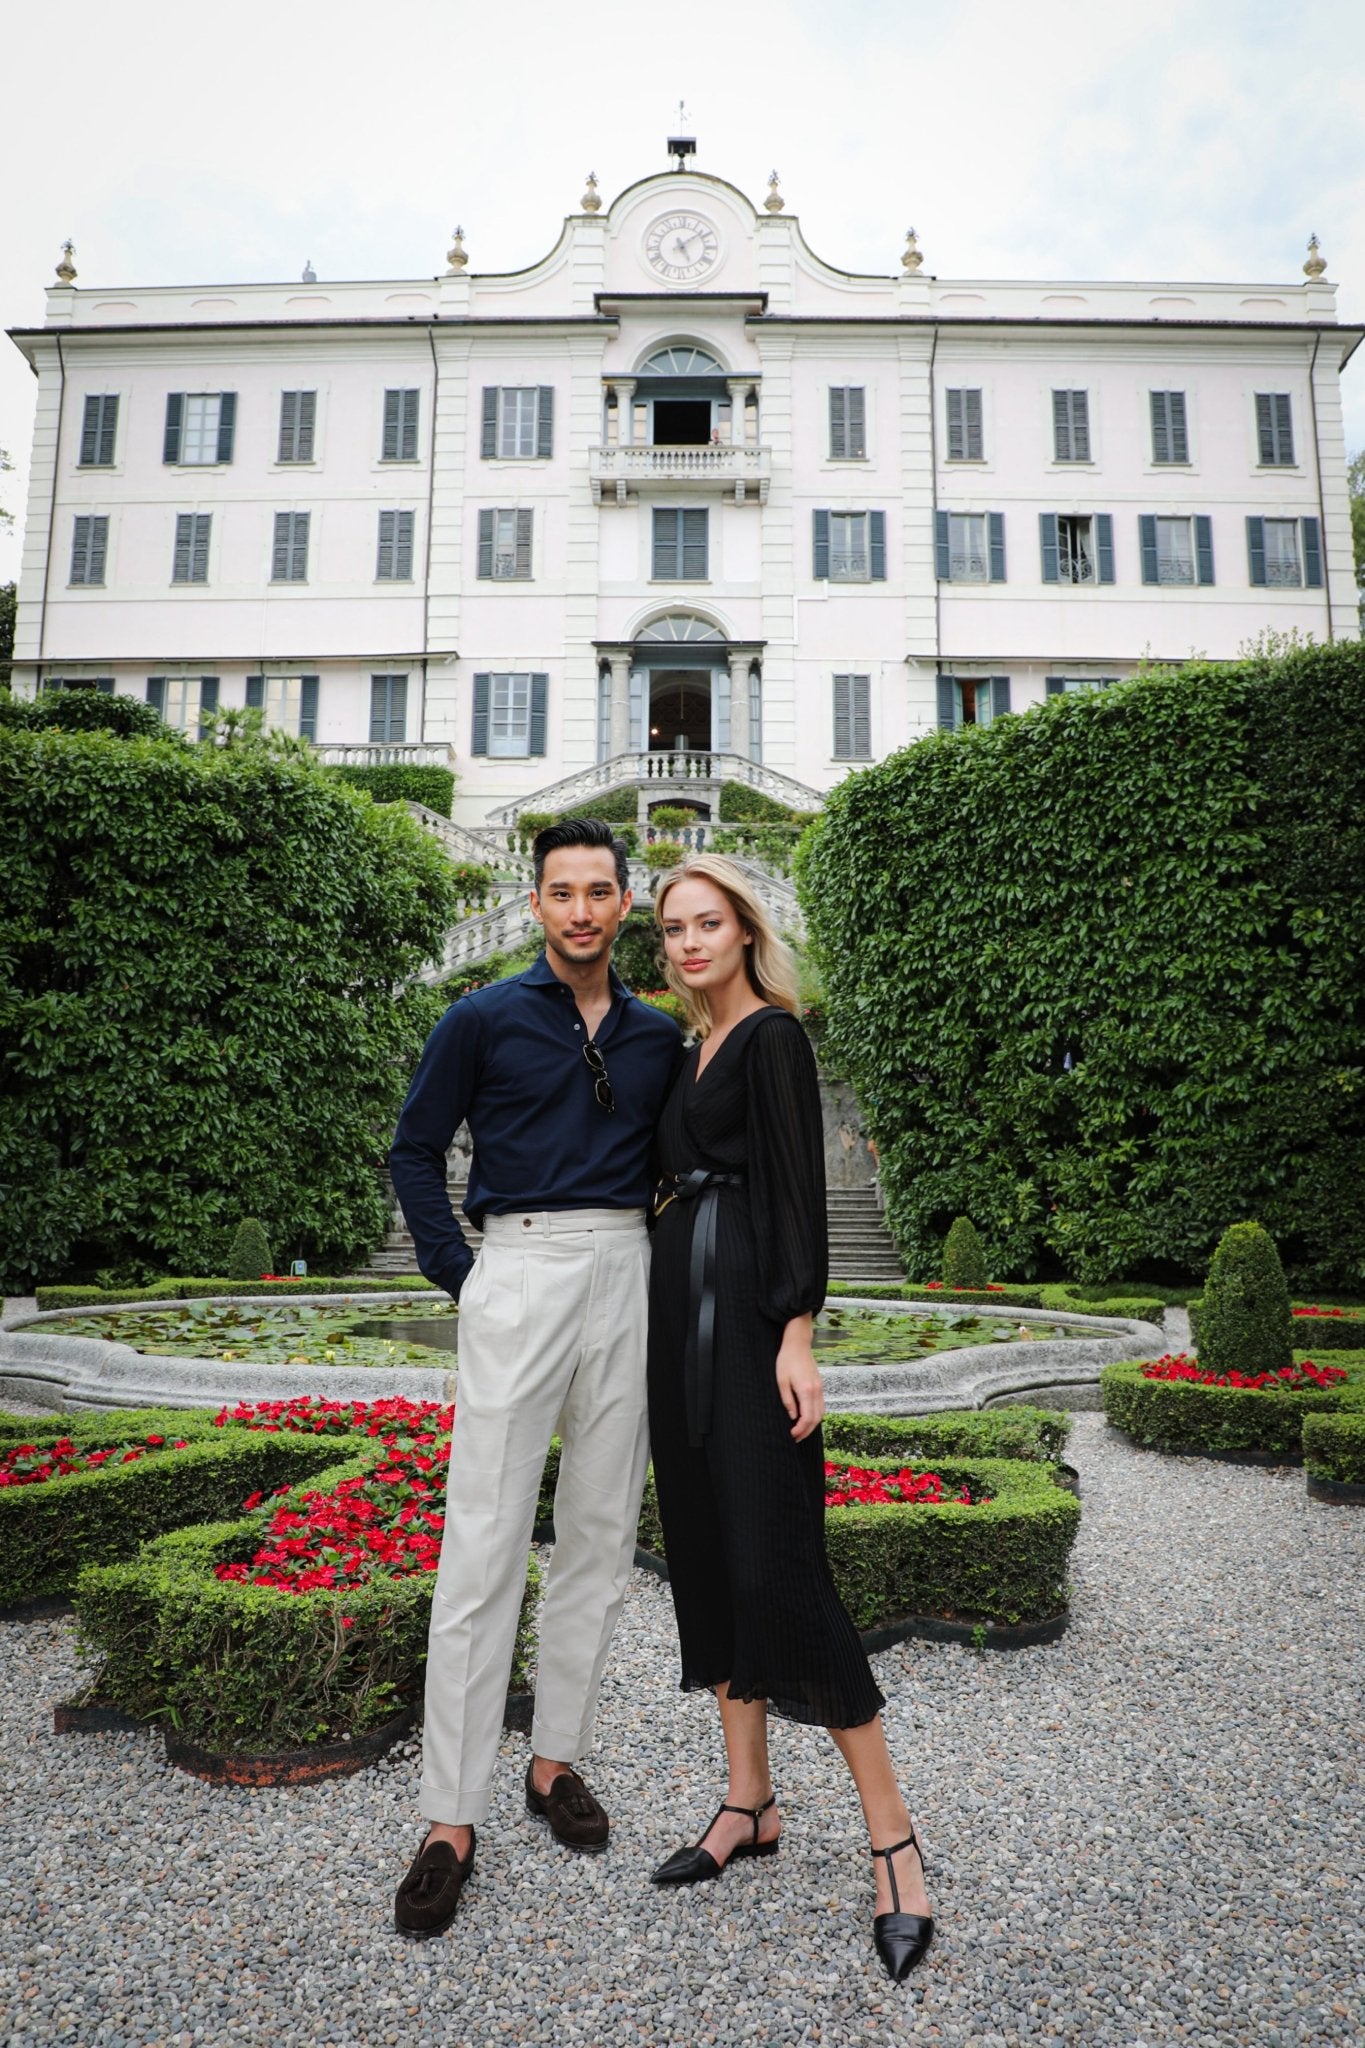 Pre Wedding Photoshoot | Villa Carlotta Lake Como